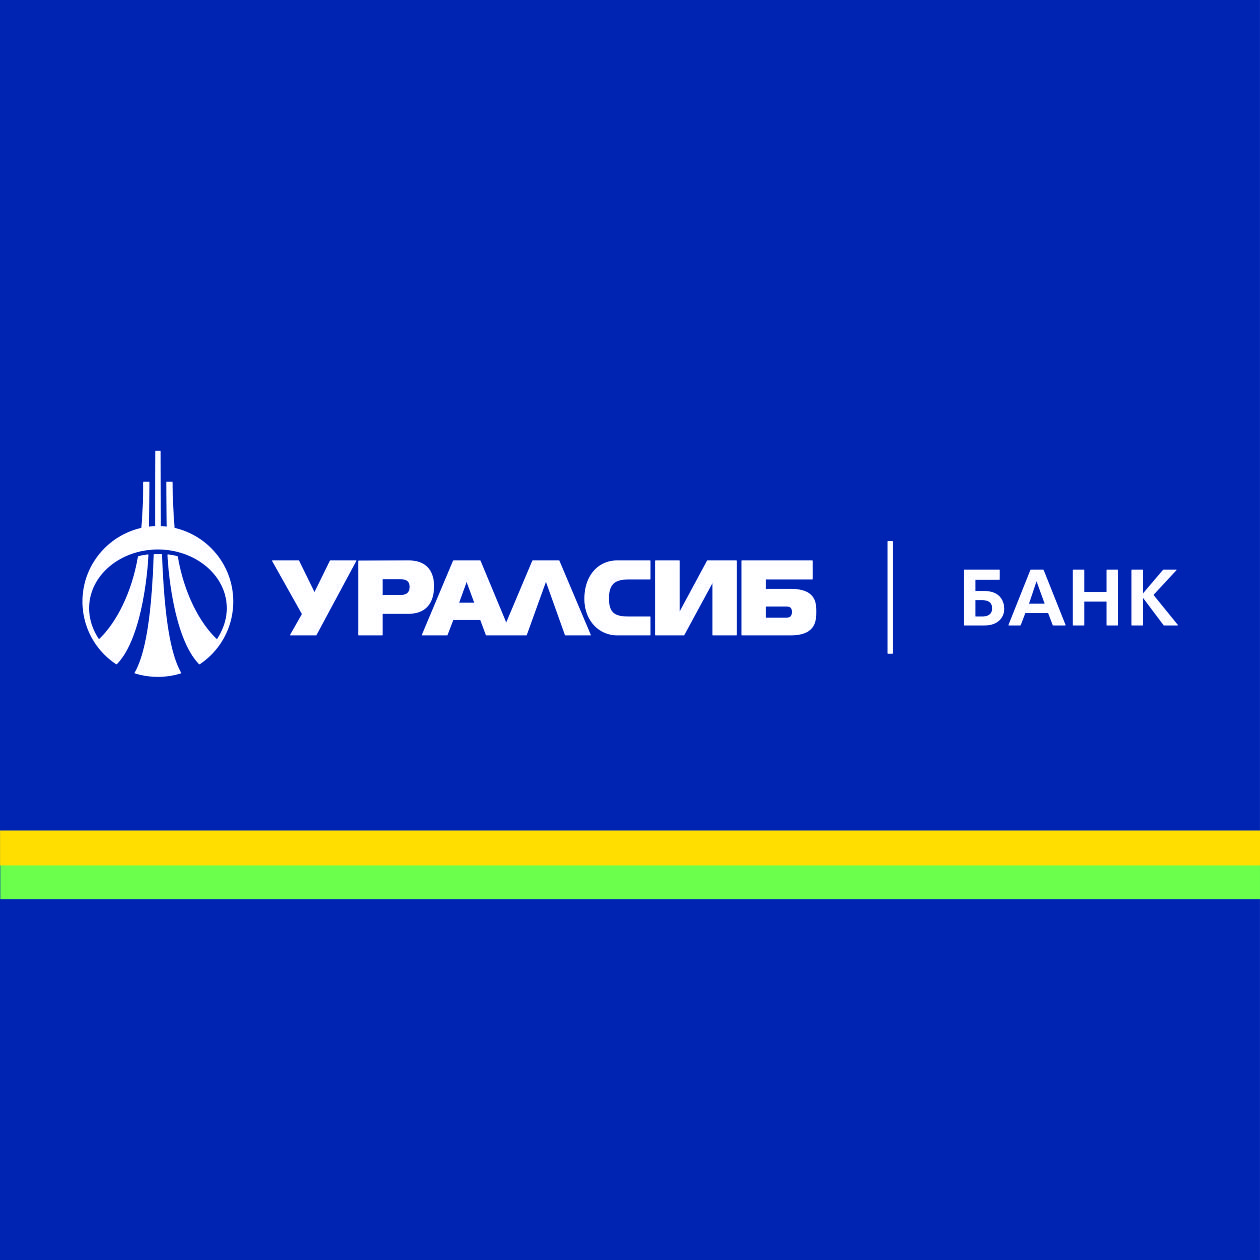 Банк УРАЛСИБ подвел  итоги деятельности за 9 месяцев 2019 года  в соответствии с РСБУ